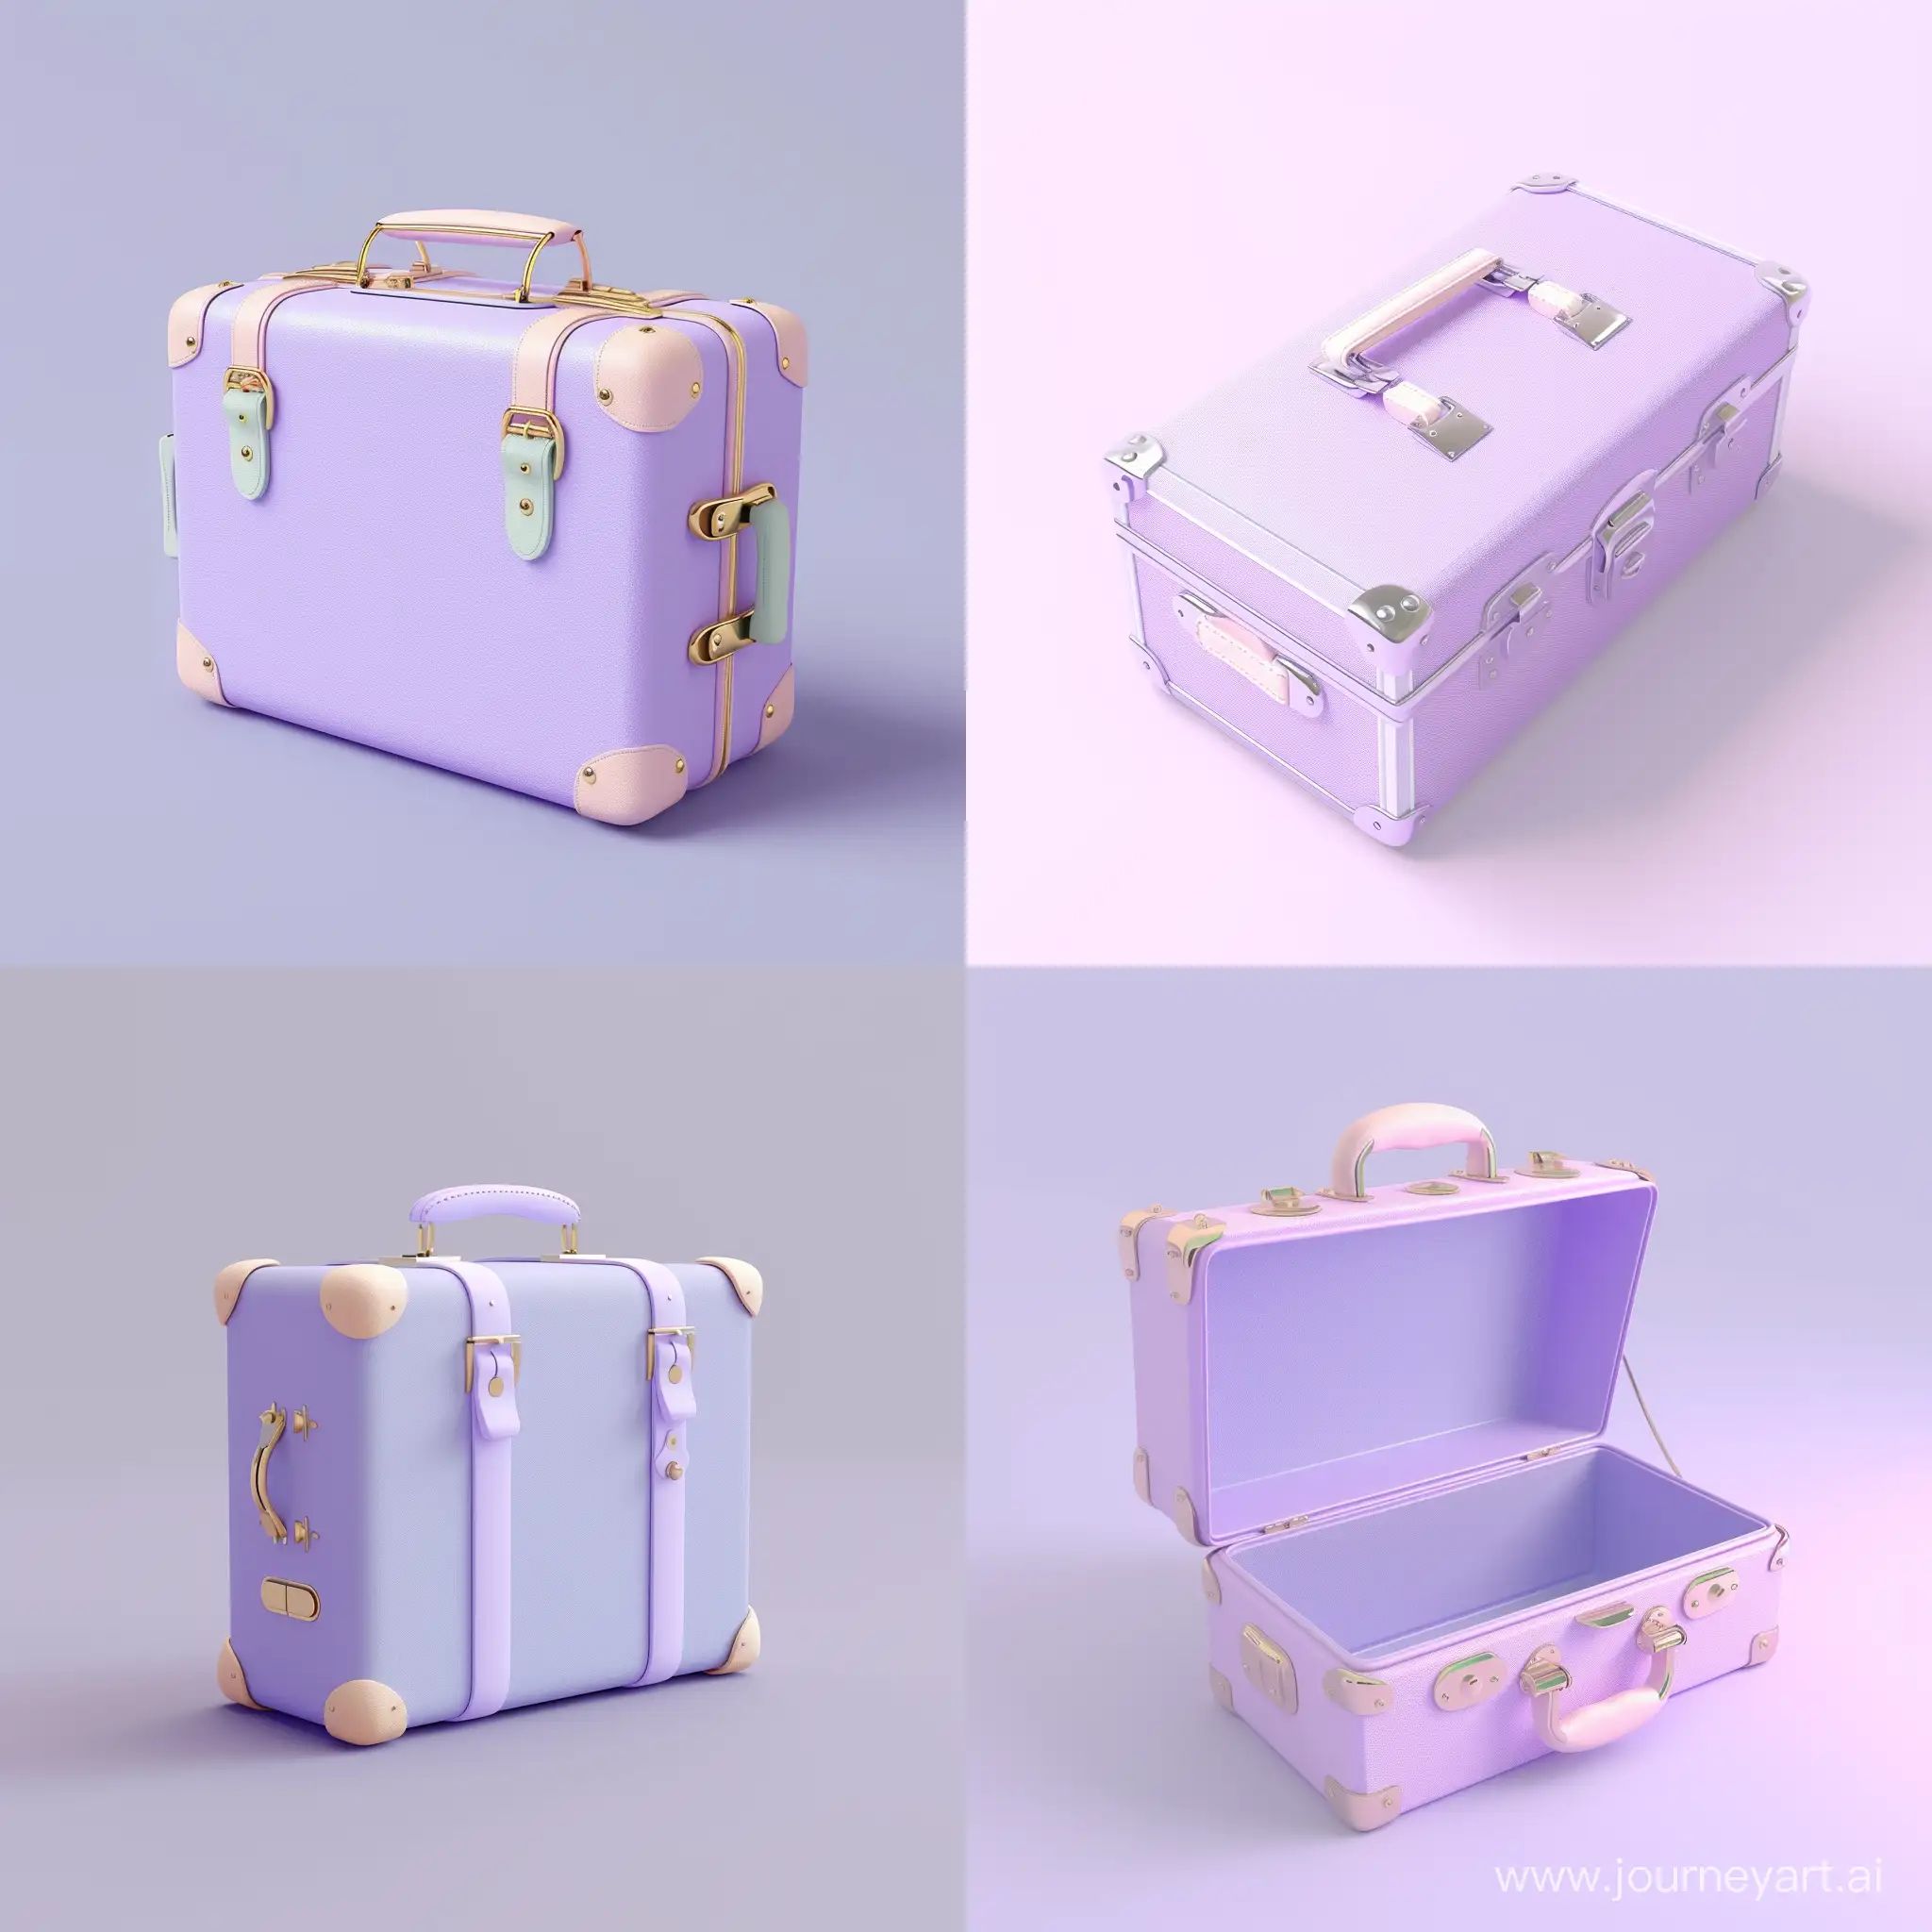 чемодан, 3d, цифровая иллюстрация, flat-иллюстрация, пастельные тона, фиолетовый цвет, без фона